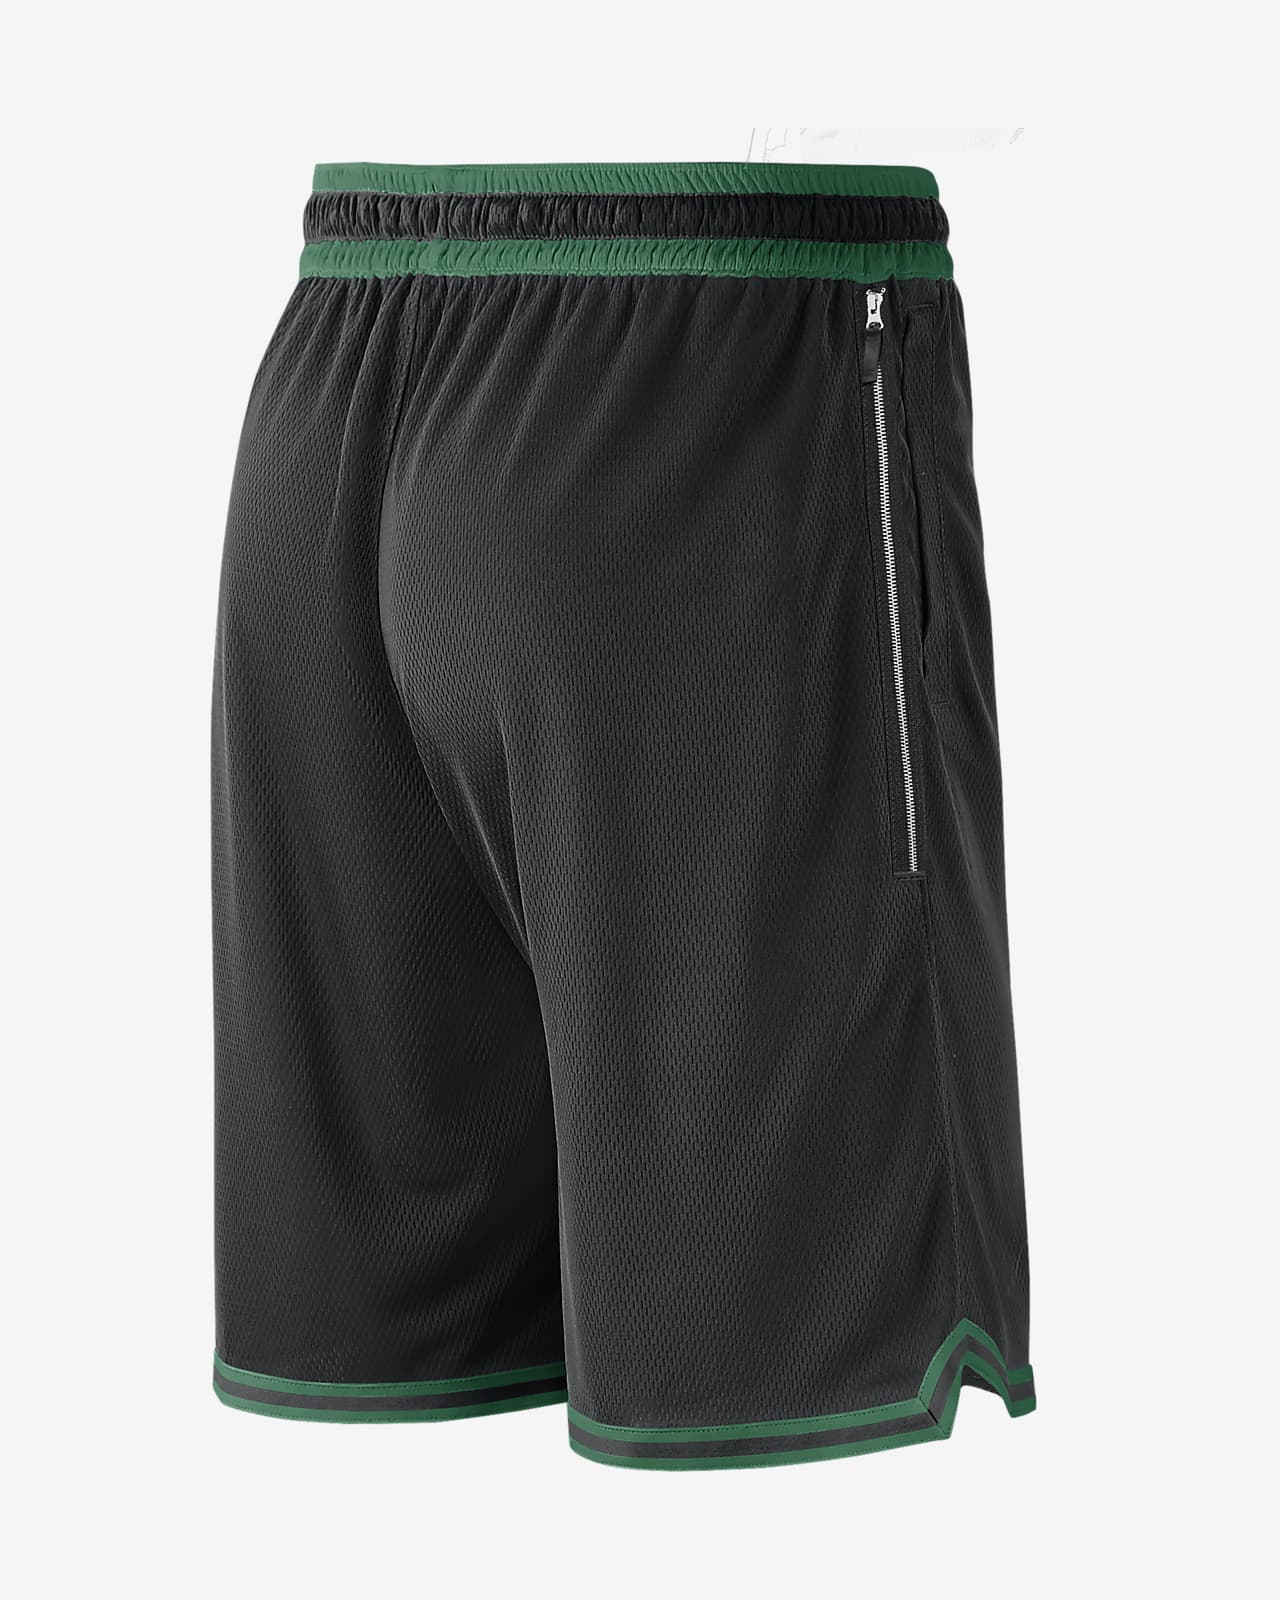 celtics authentic shorts